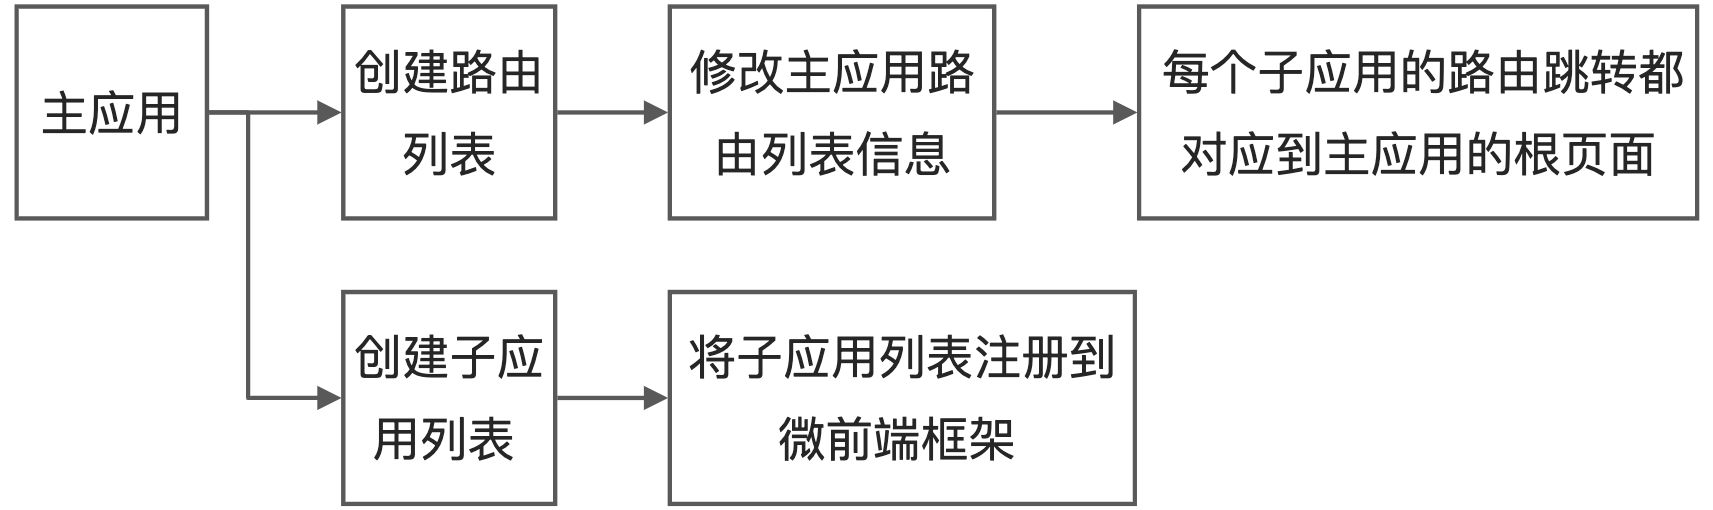 5-2~3 中央控制器 - 主应用开发 - 图3